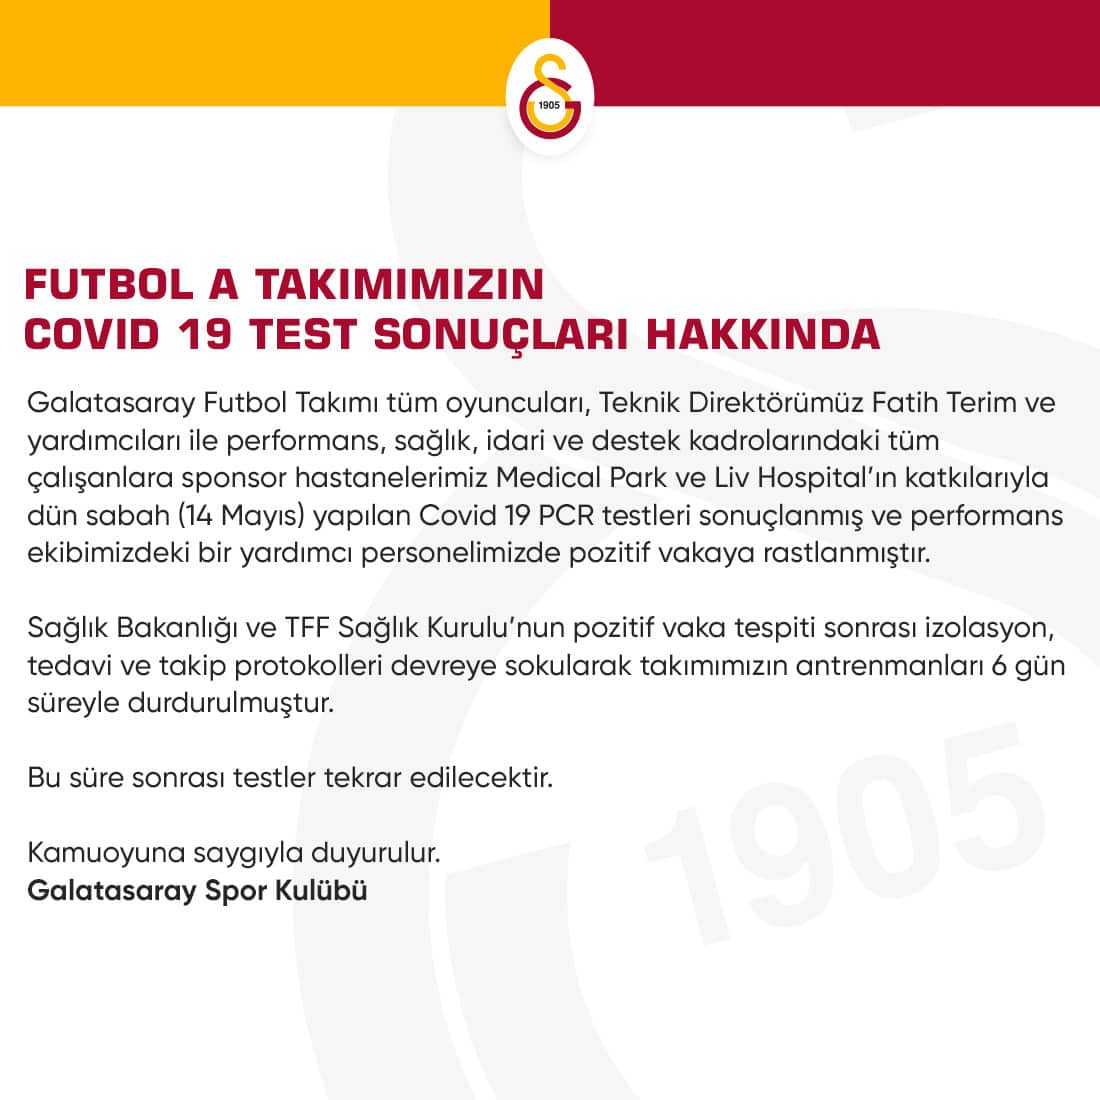 Galatasaray'a Yapılan Koronavirüs Test Sonucu Çıktı